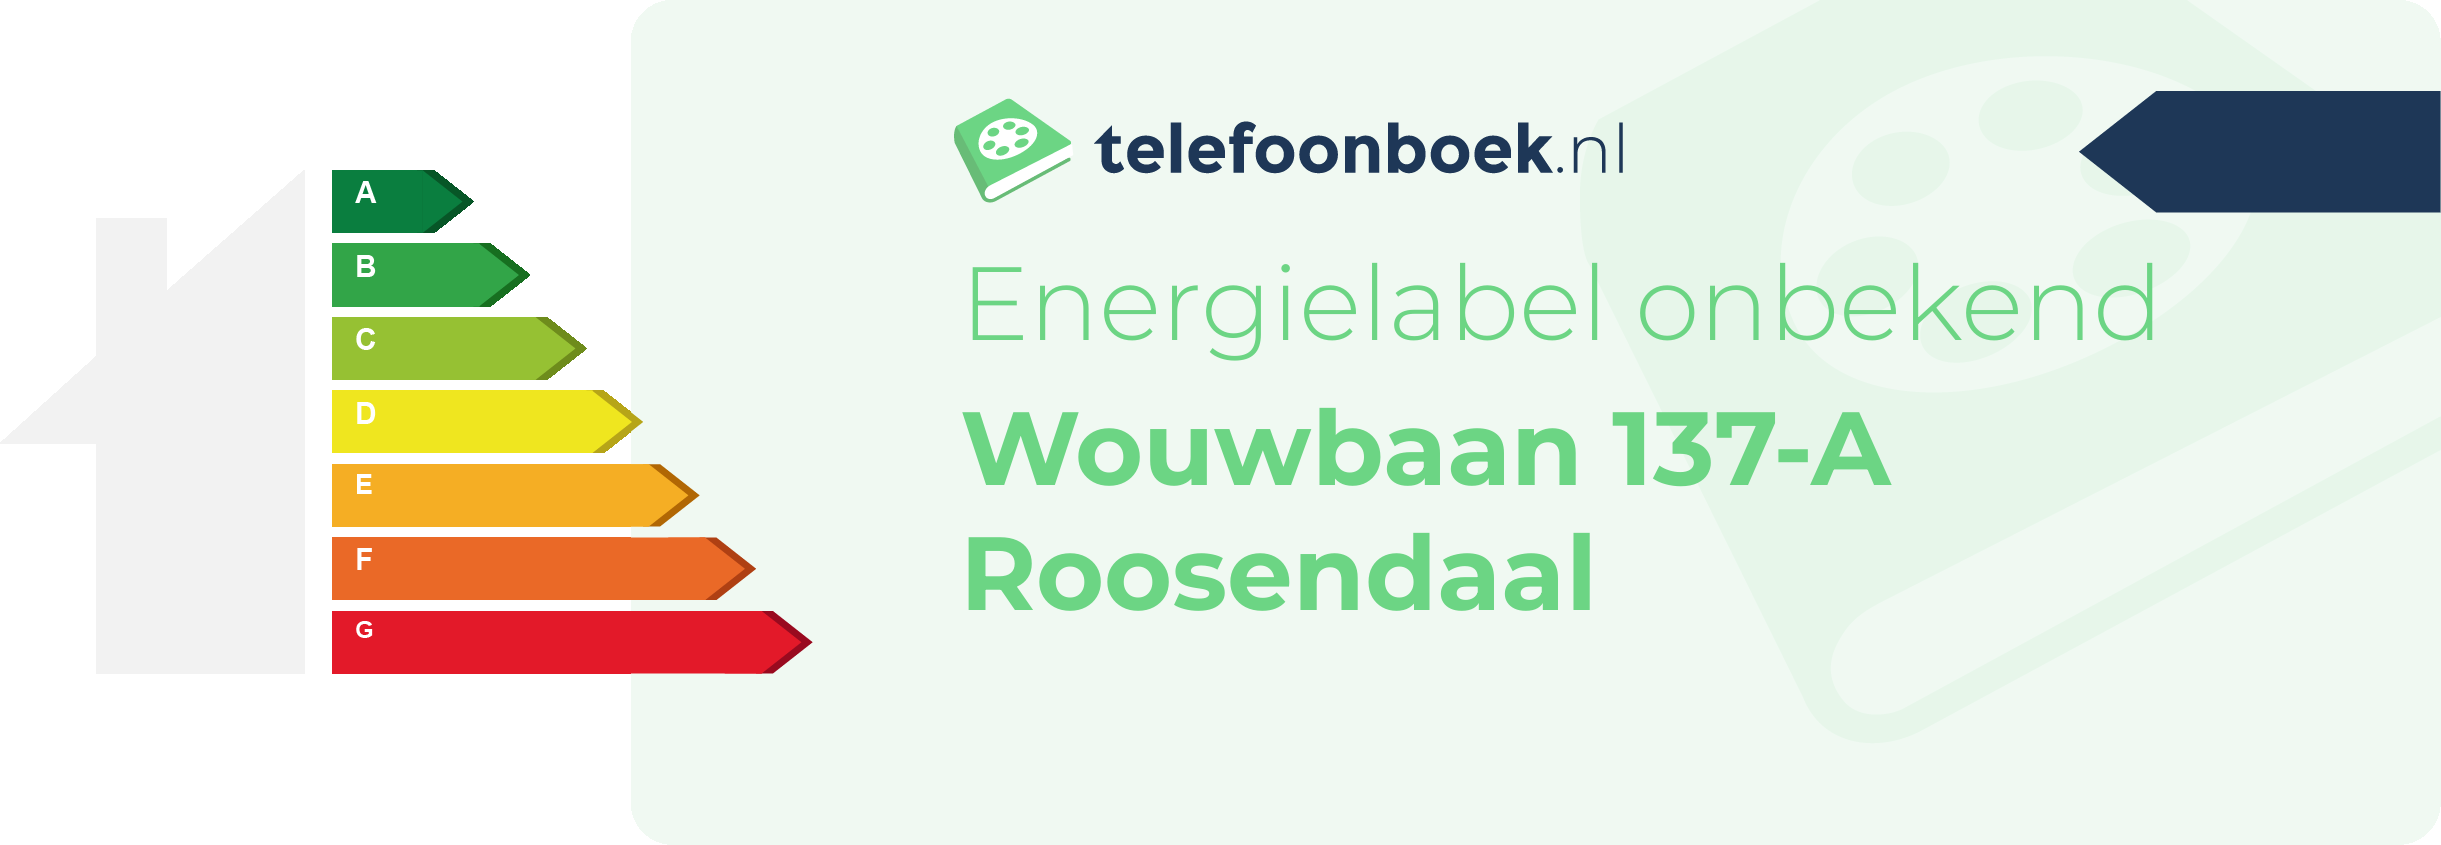 Energielabel Wouwbaan 137-A Roosendaal